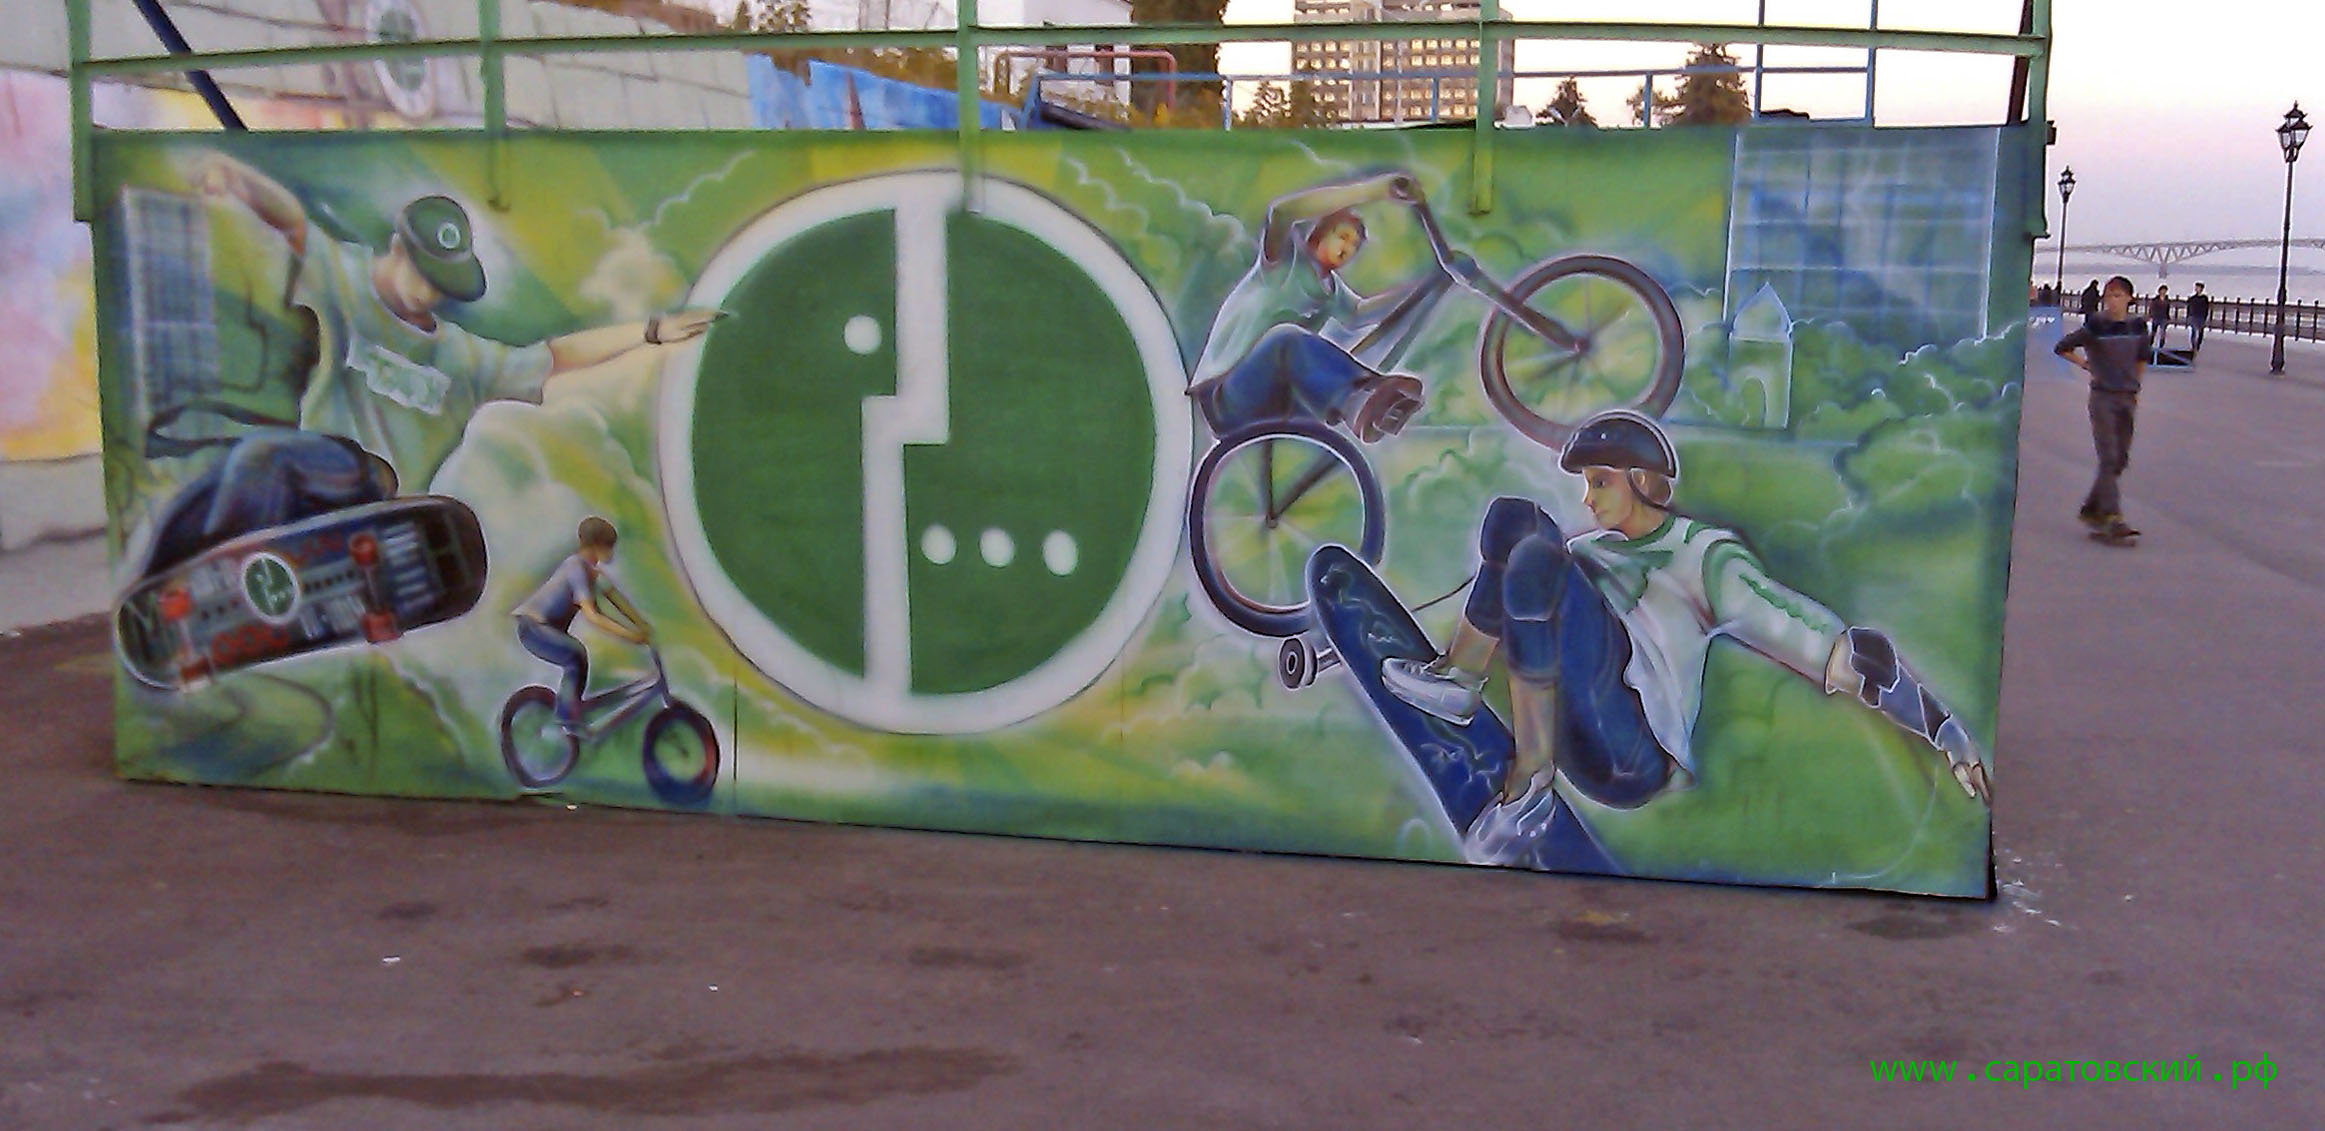 Саратовская набережная, граффити: активный летний отдых в Саратове